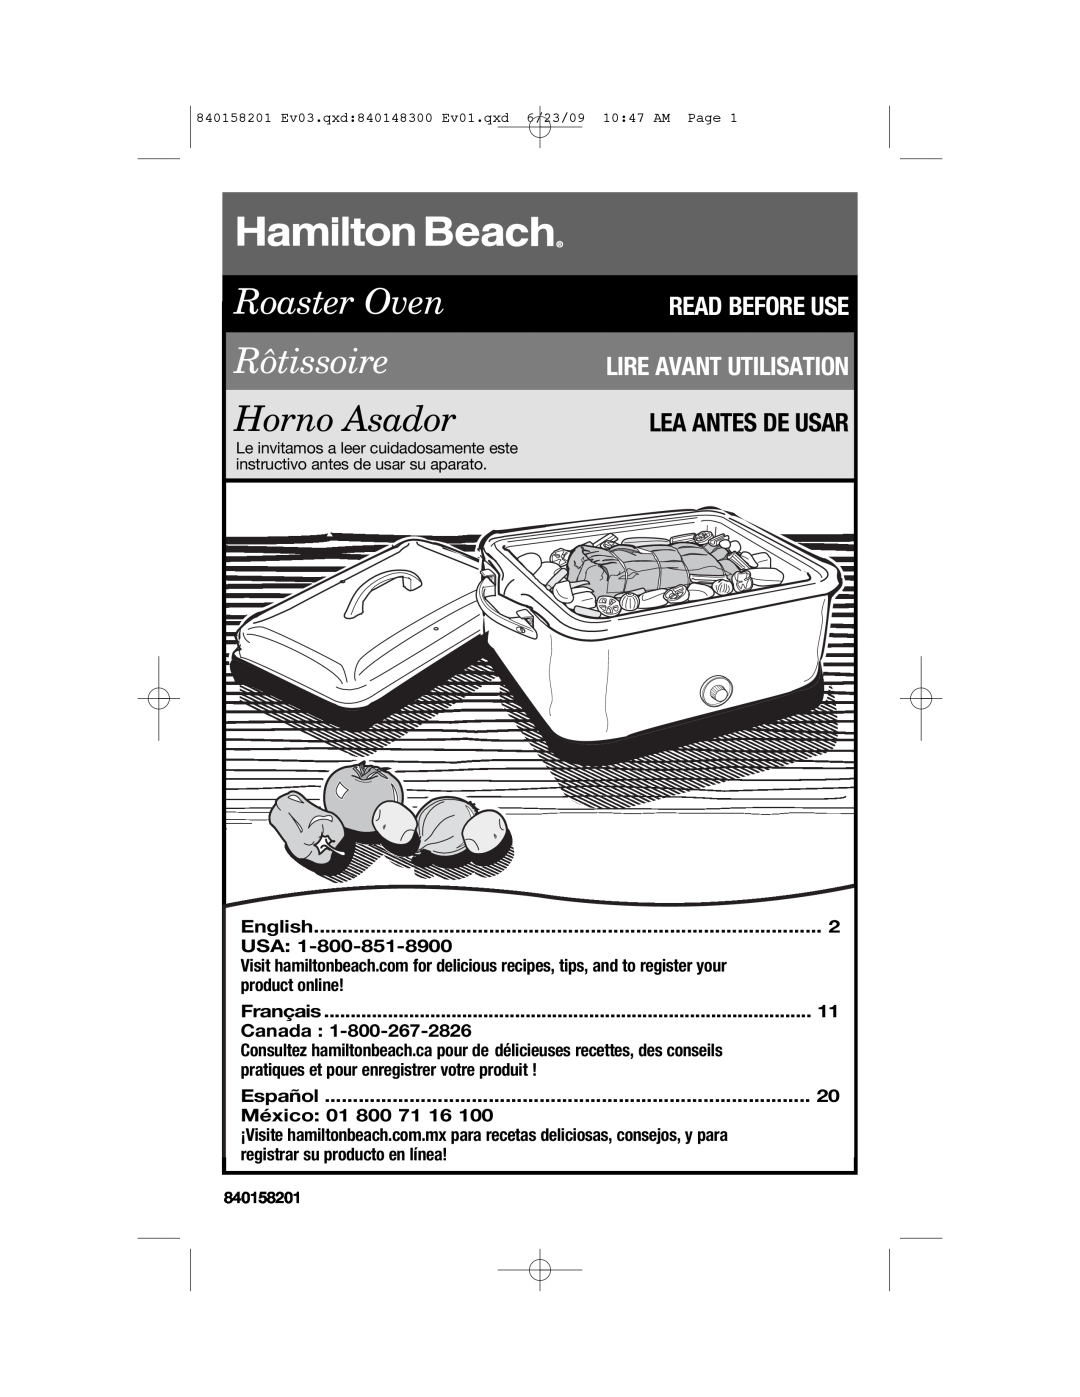 Hamilton Beach 840158201 manual English, product online, Français, Canada, pratiques et pour enregistrer votre produit 